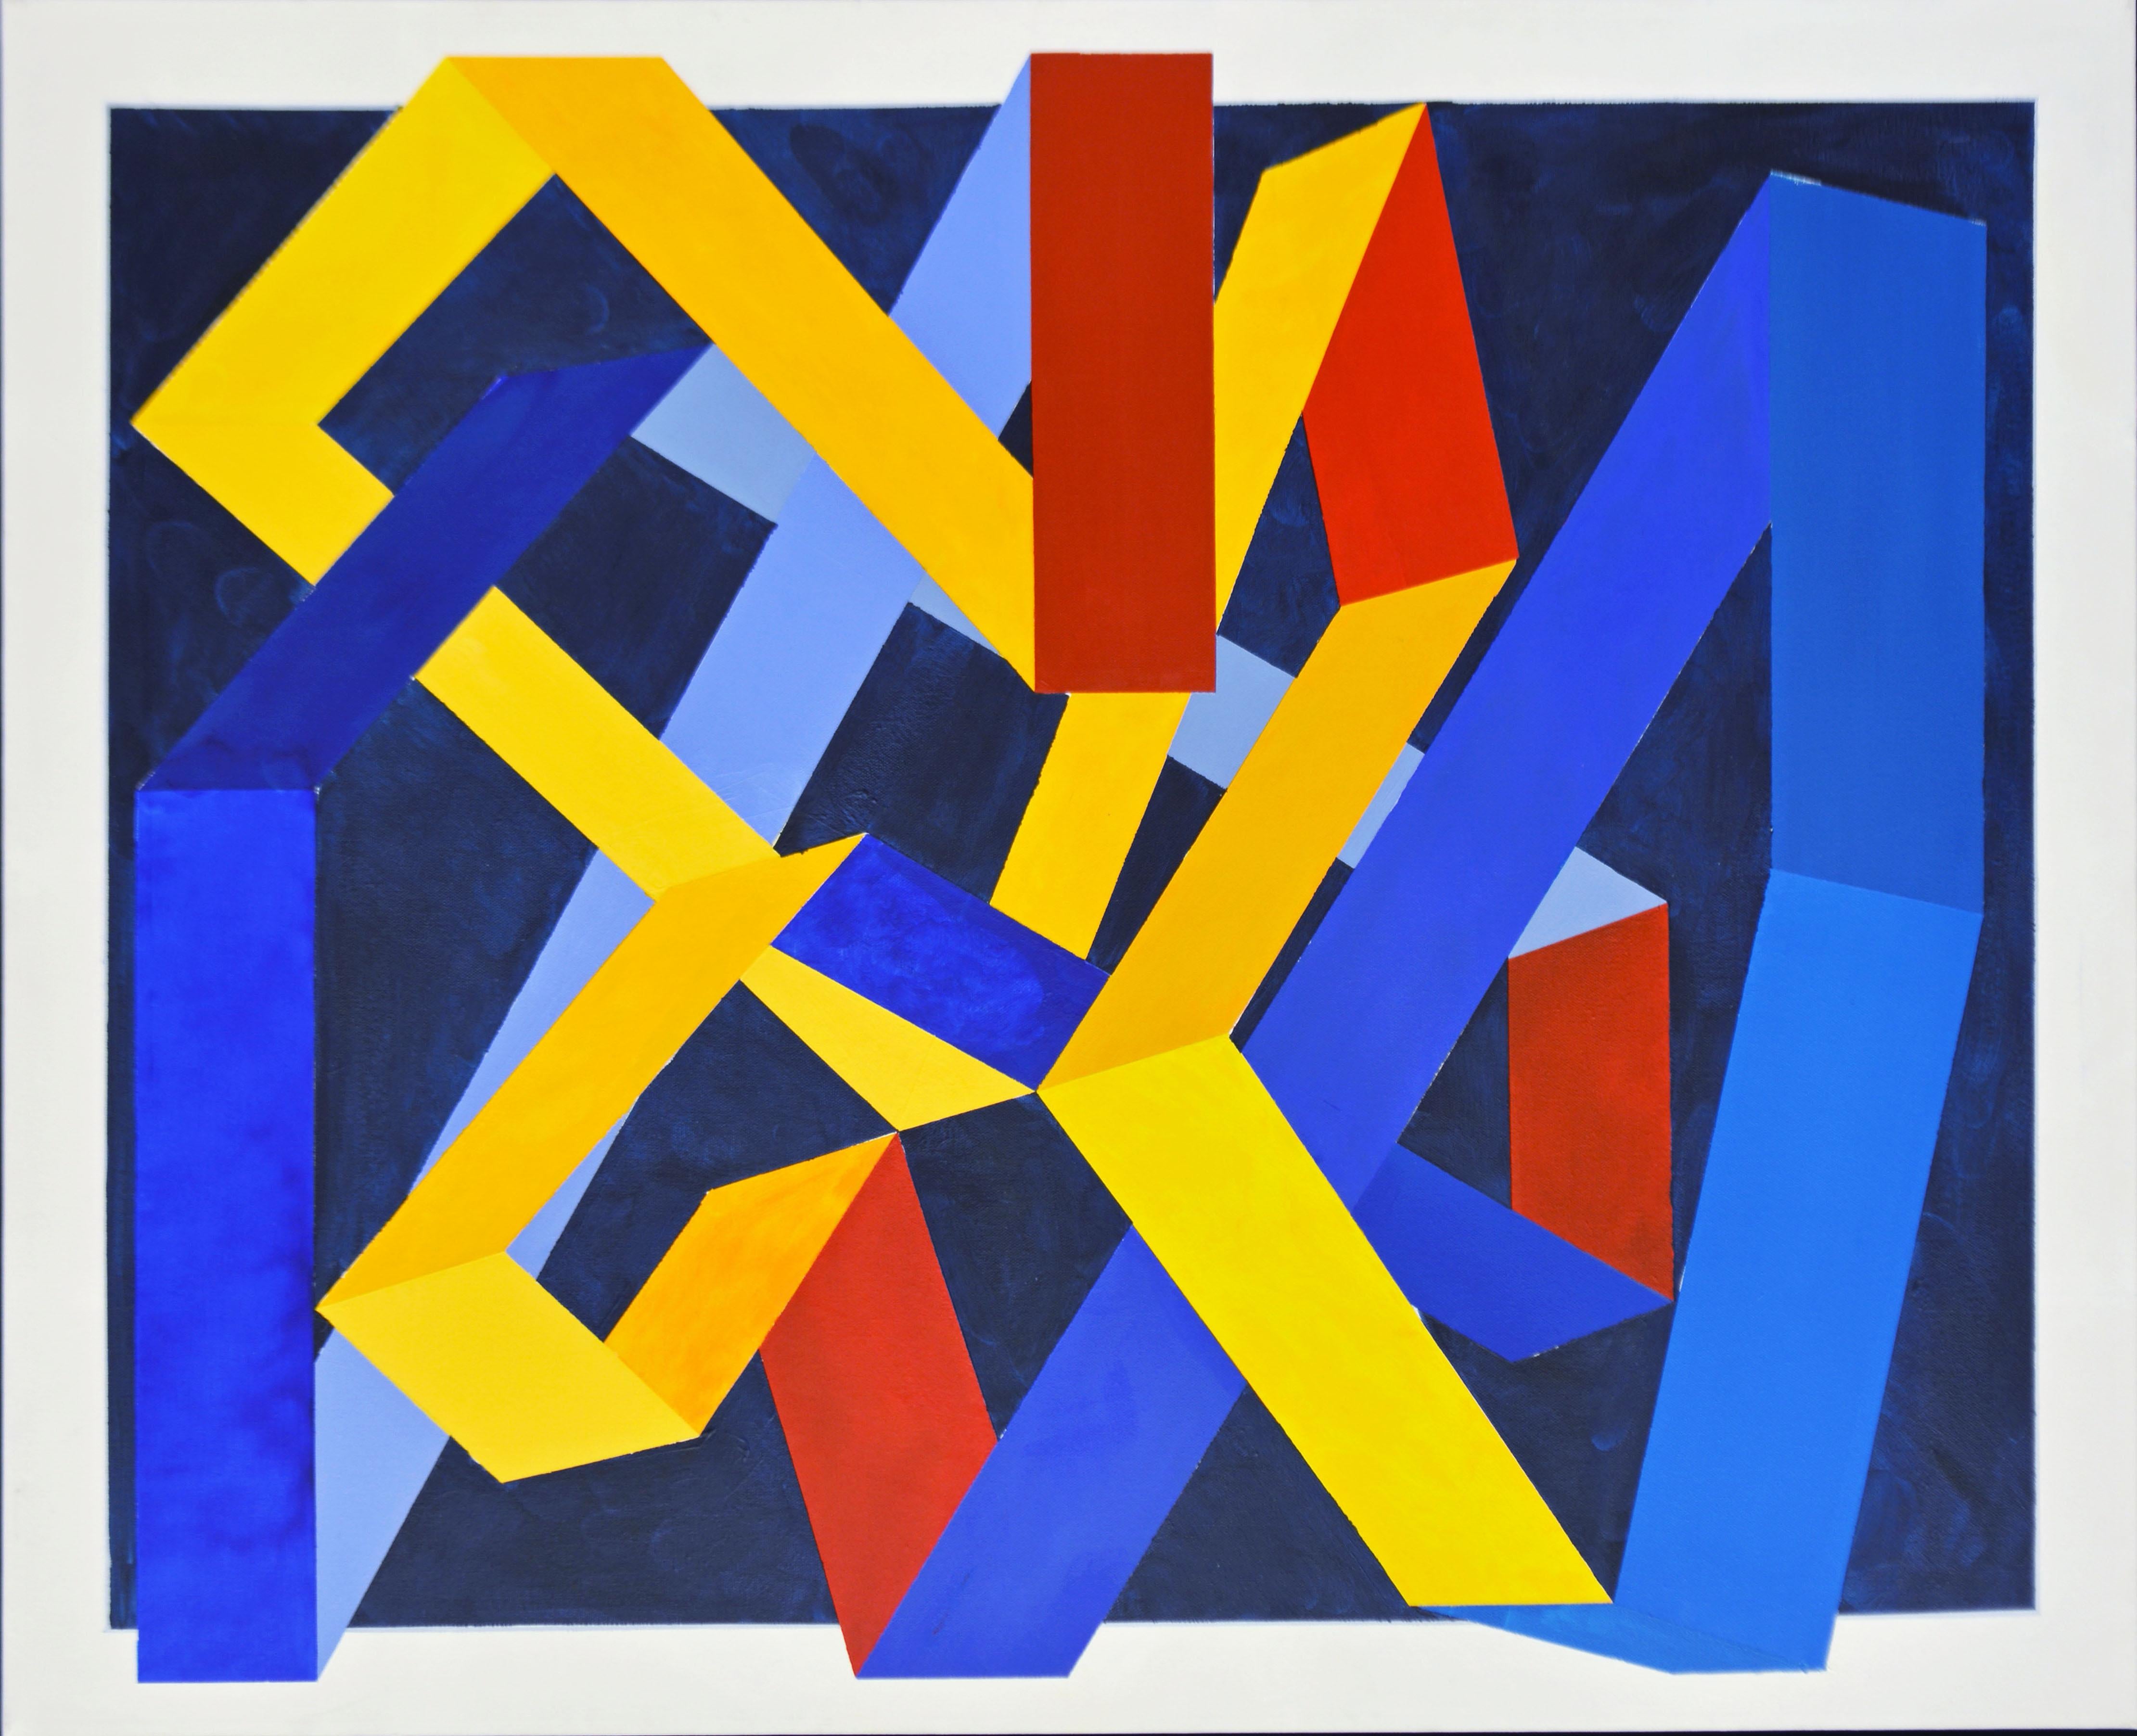 Bewegung
von Anders Hegelund, Däne, geb. 1938.
Acryl auf Leinwand. Maße: 31 x 39 in. ohne Rahmen, 33 x 41 in. mit Rahmen, signiert, datiert und betitelt auf der Rückseite.
Untergebracht in einem minimalistischen, silberfarbenen